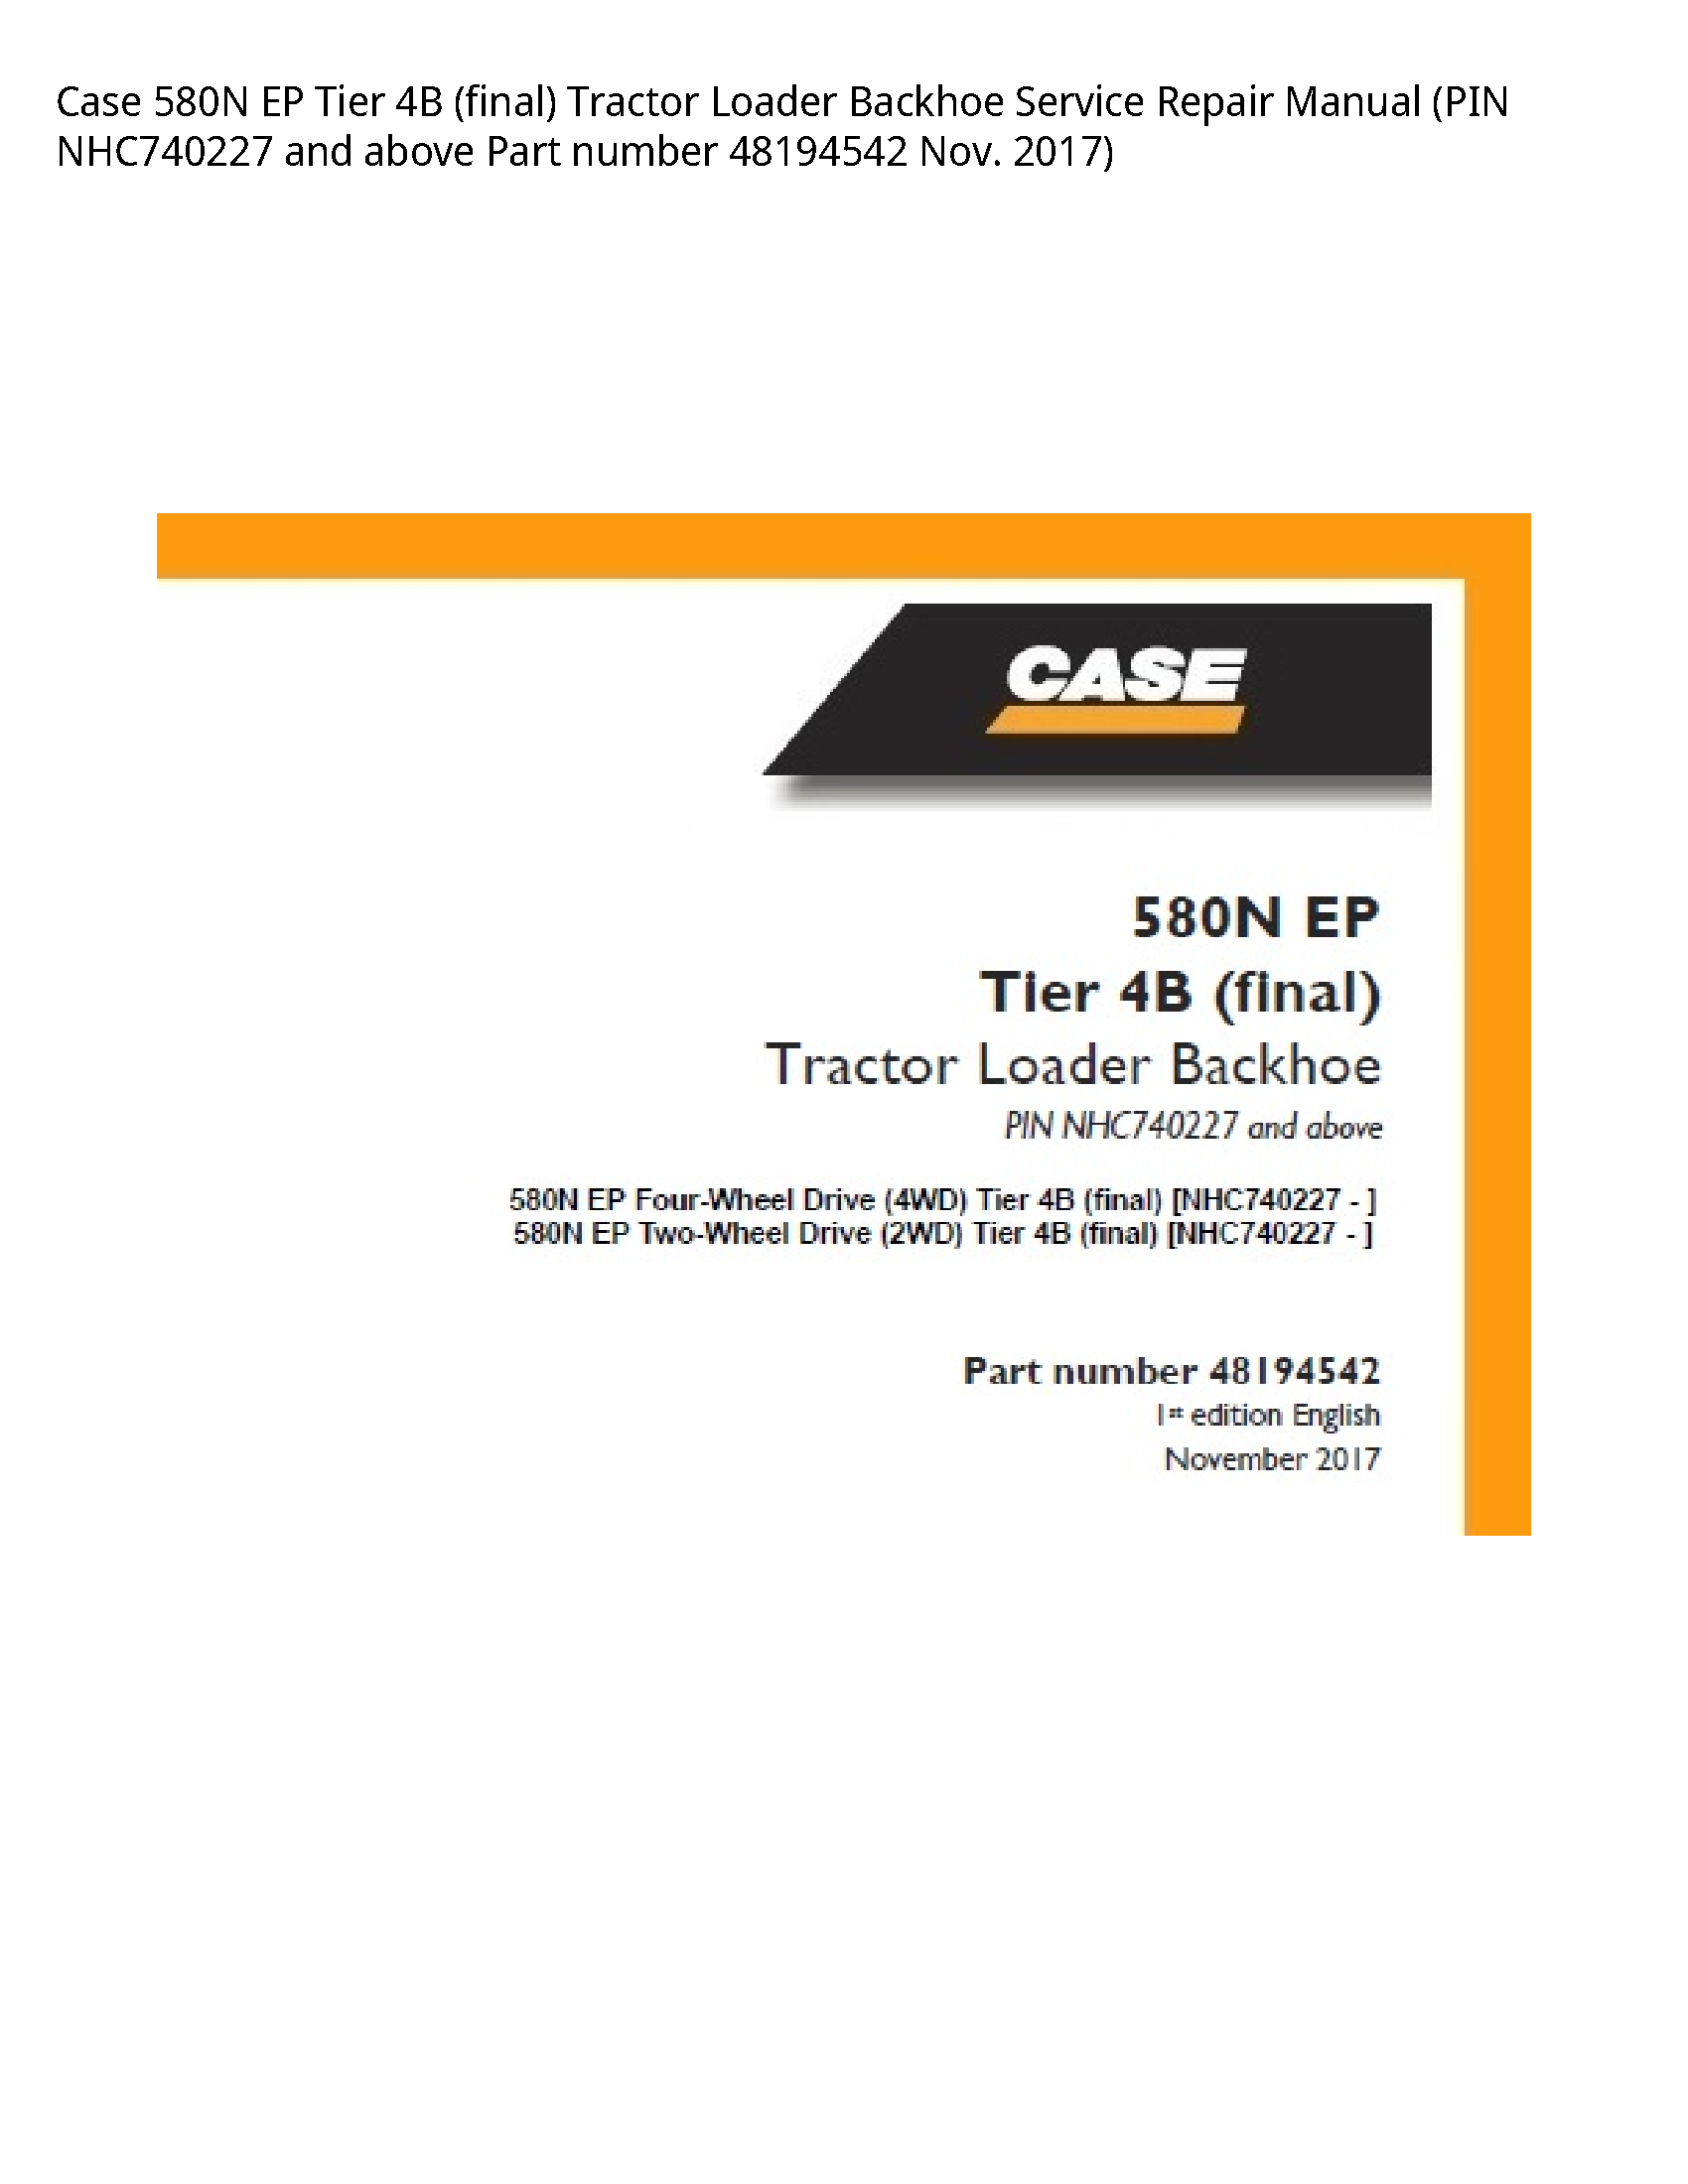 Case/Case IH 580N EP Tier (final) Tractor Loader Backhoe manual